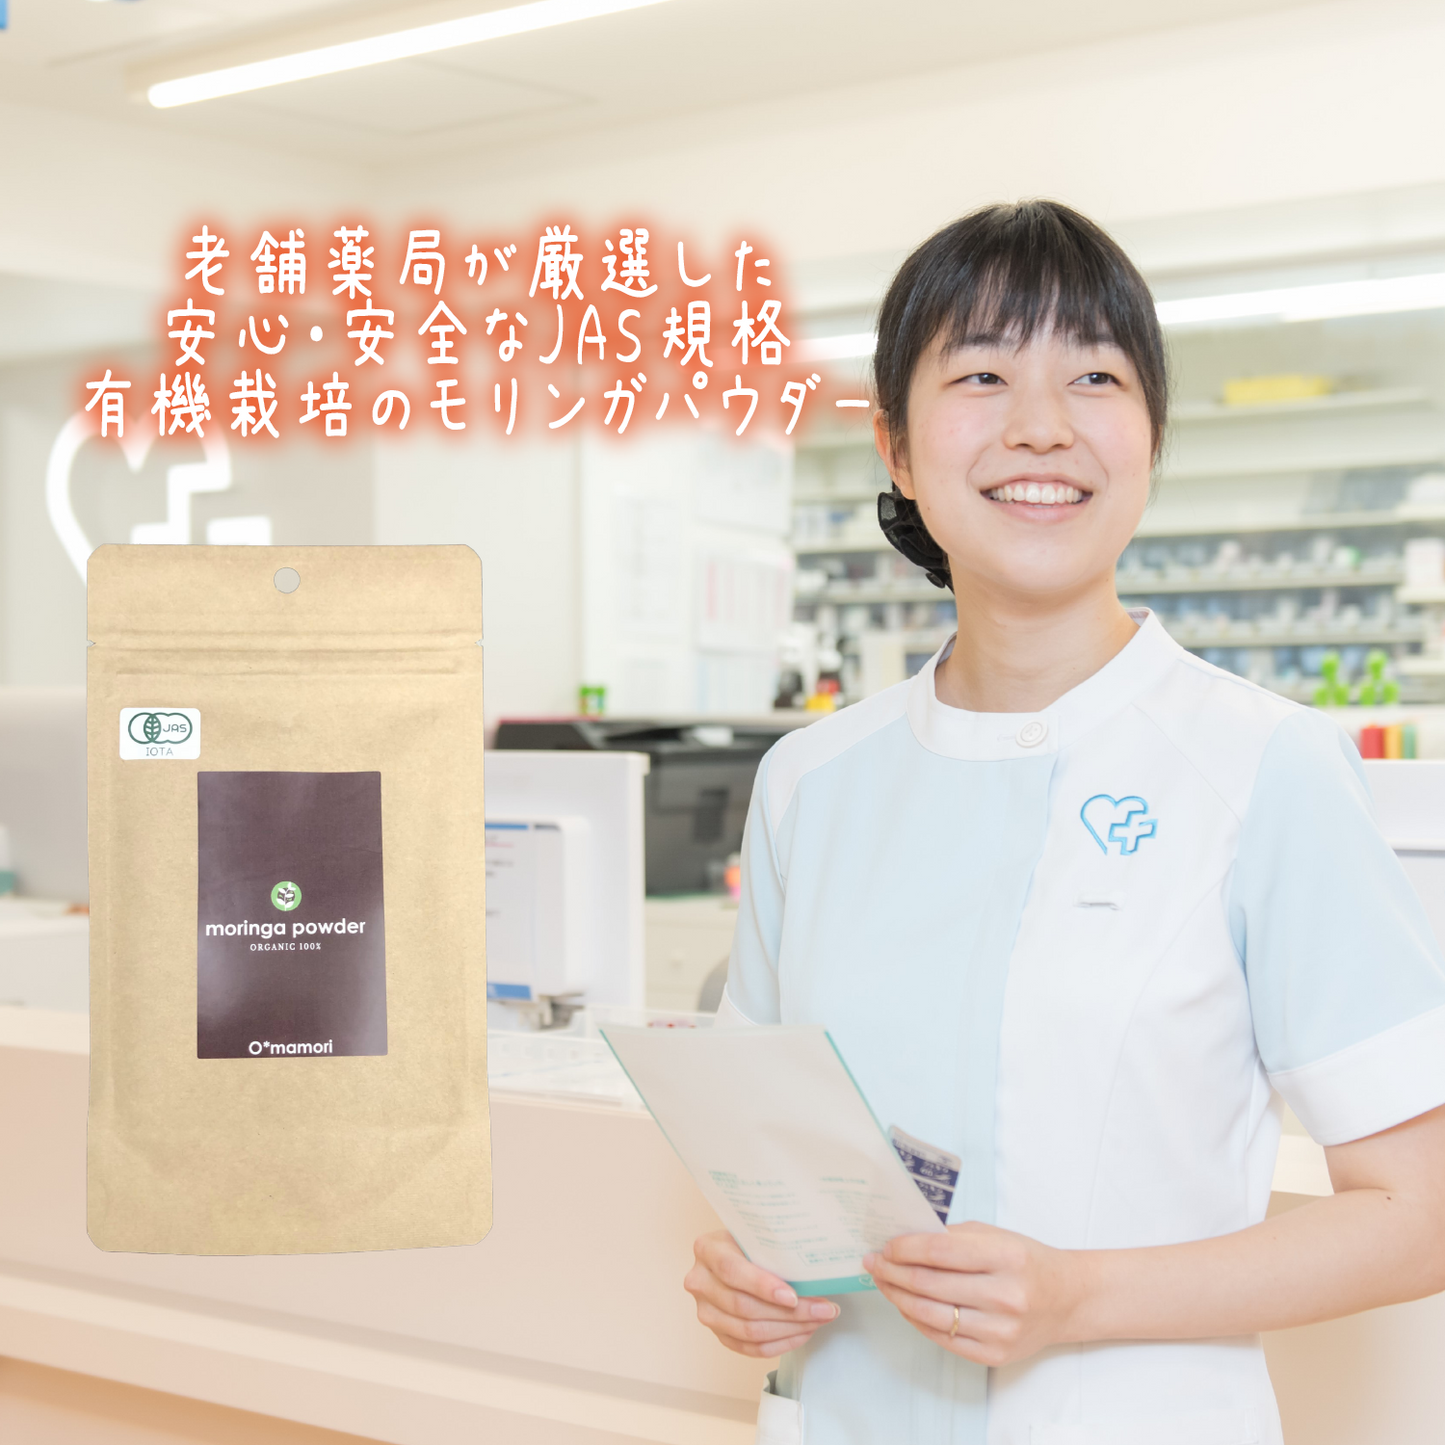 【有機JAS認証】沖縄県産100% 有機モリンガ粉末パウダー 30g